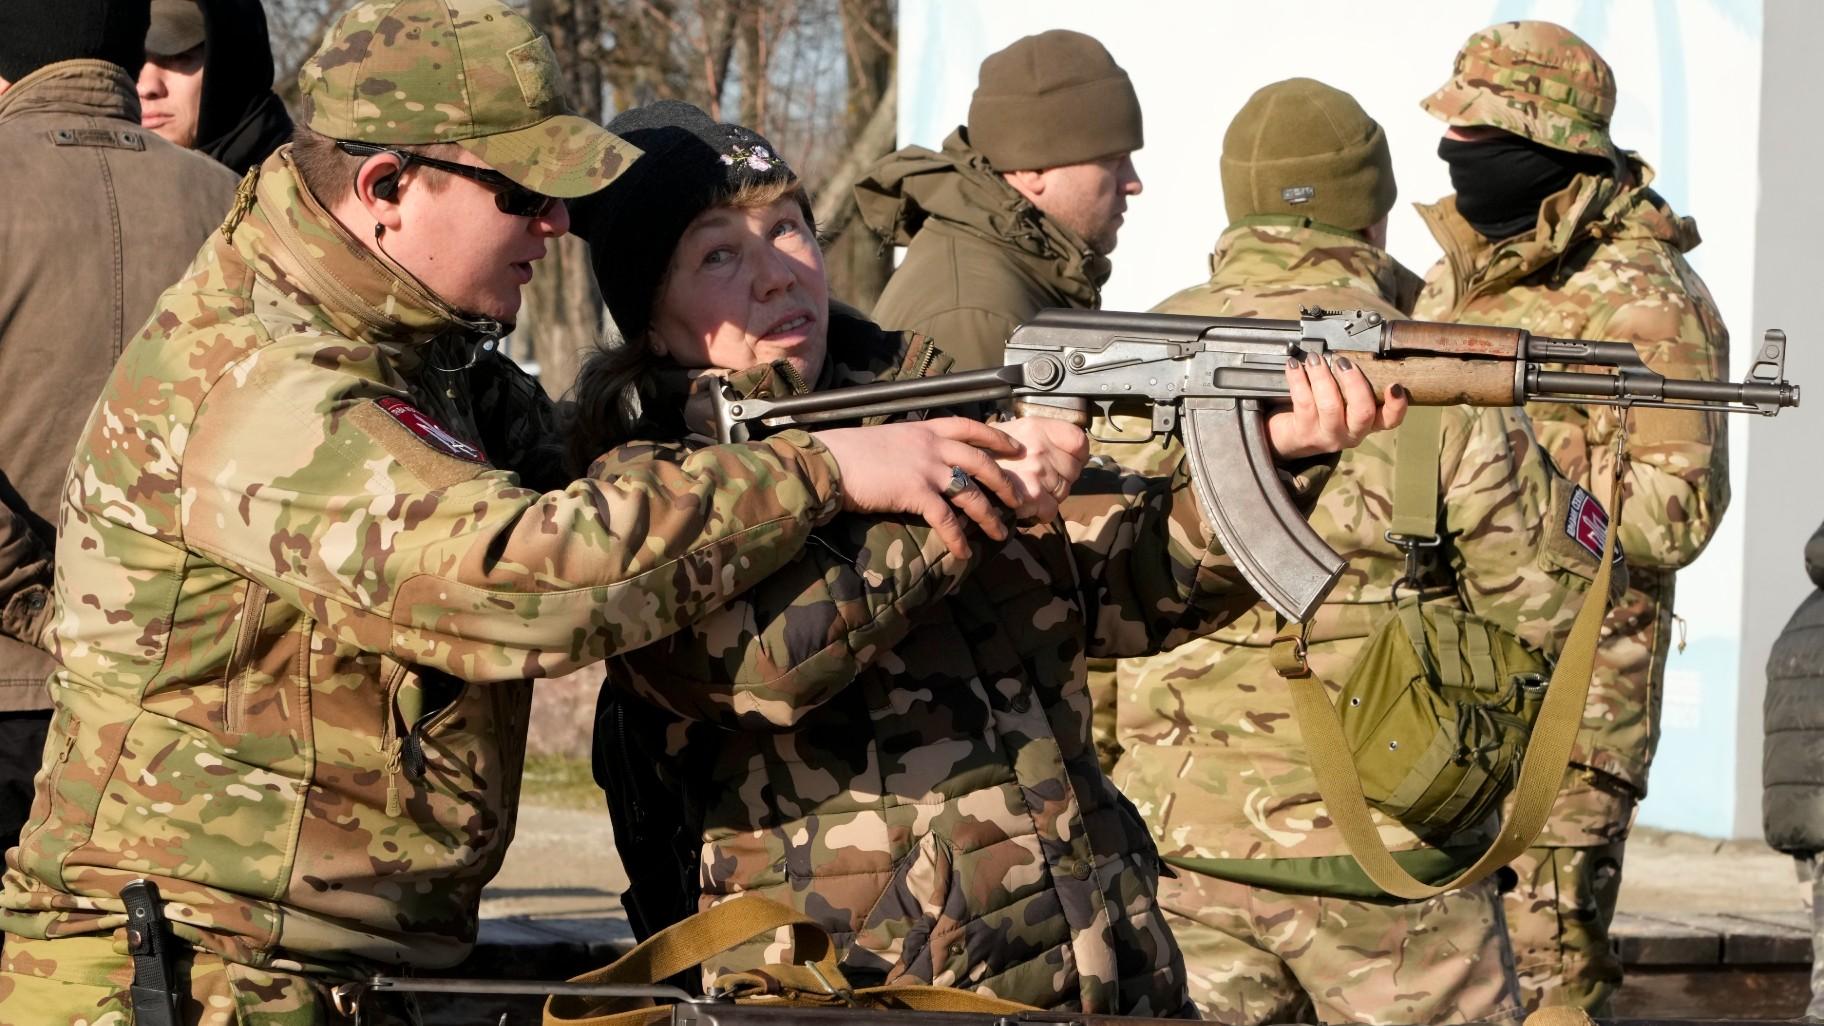 russian military assault rifles